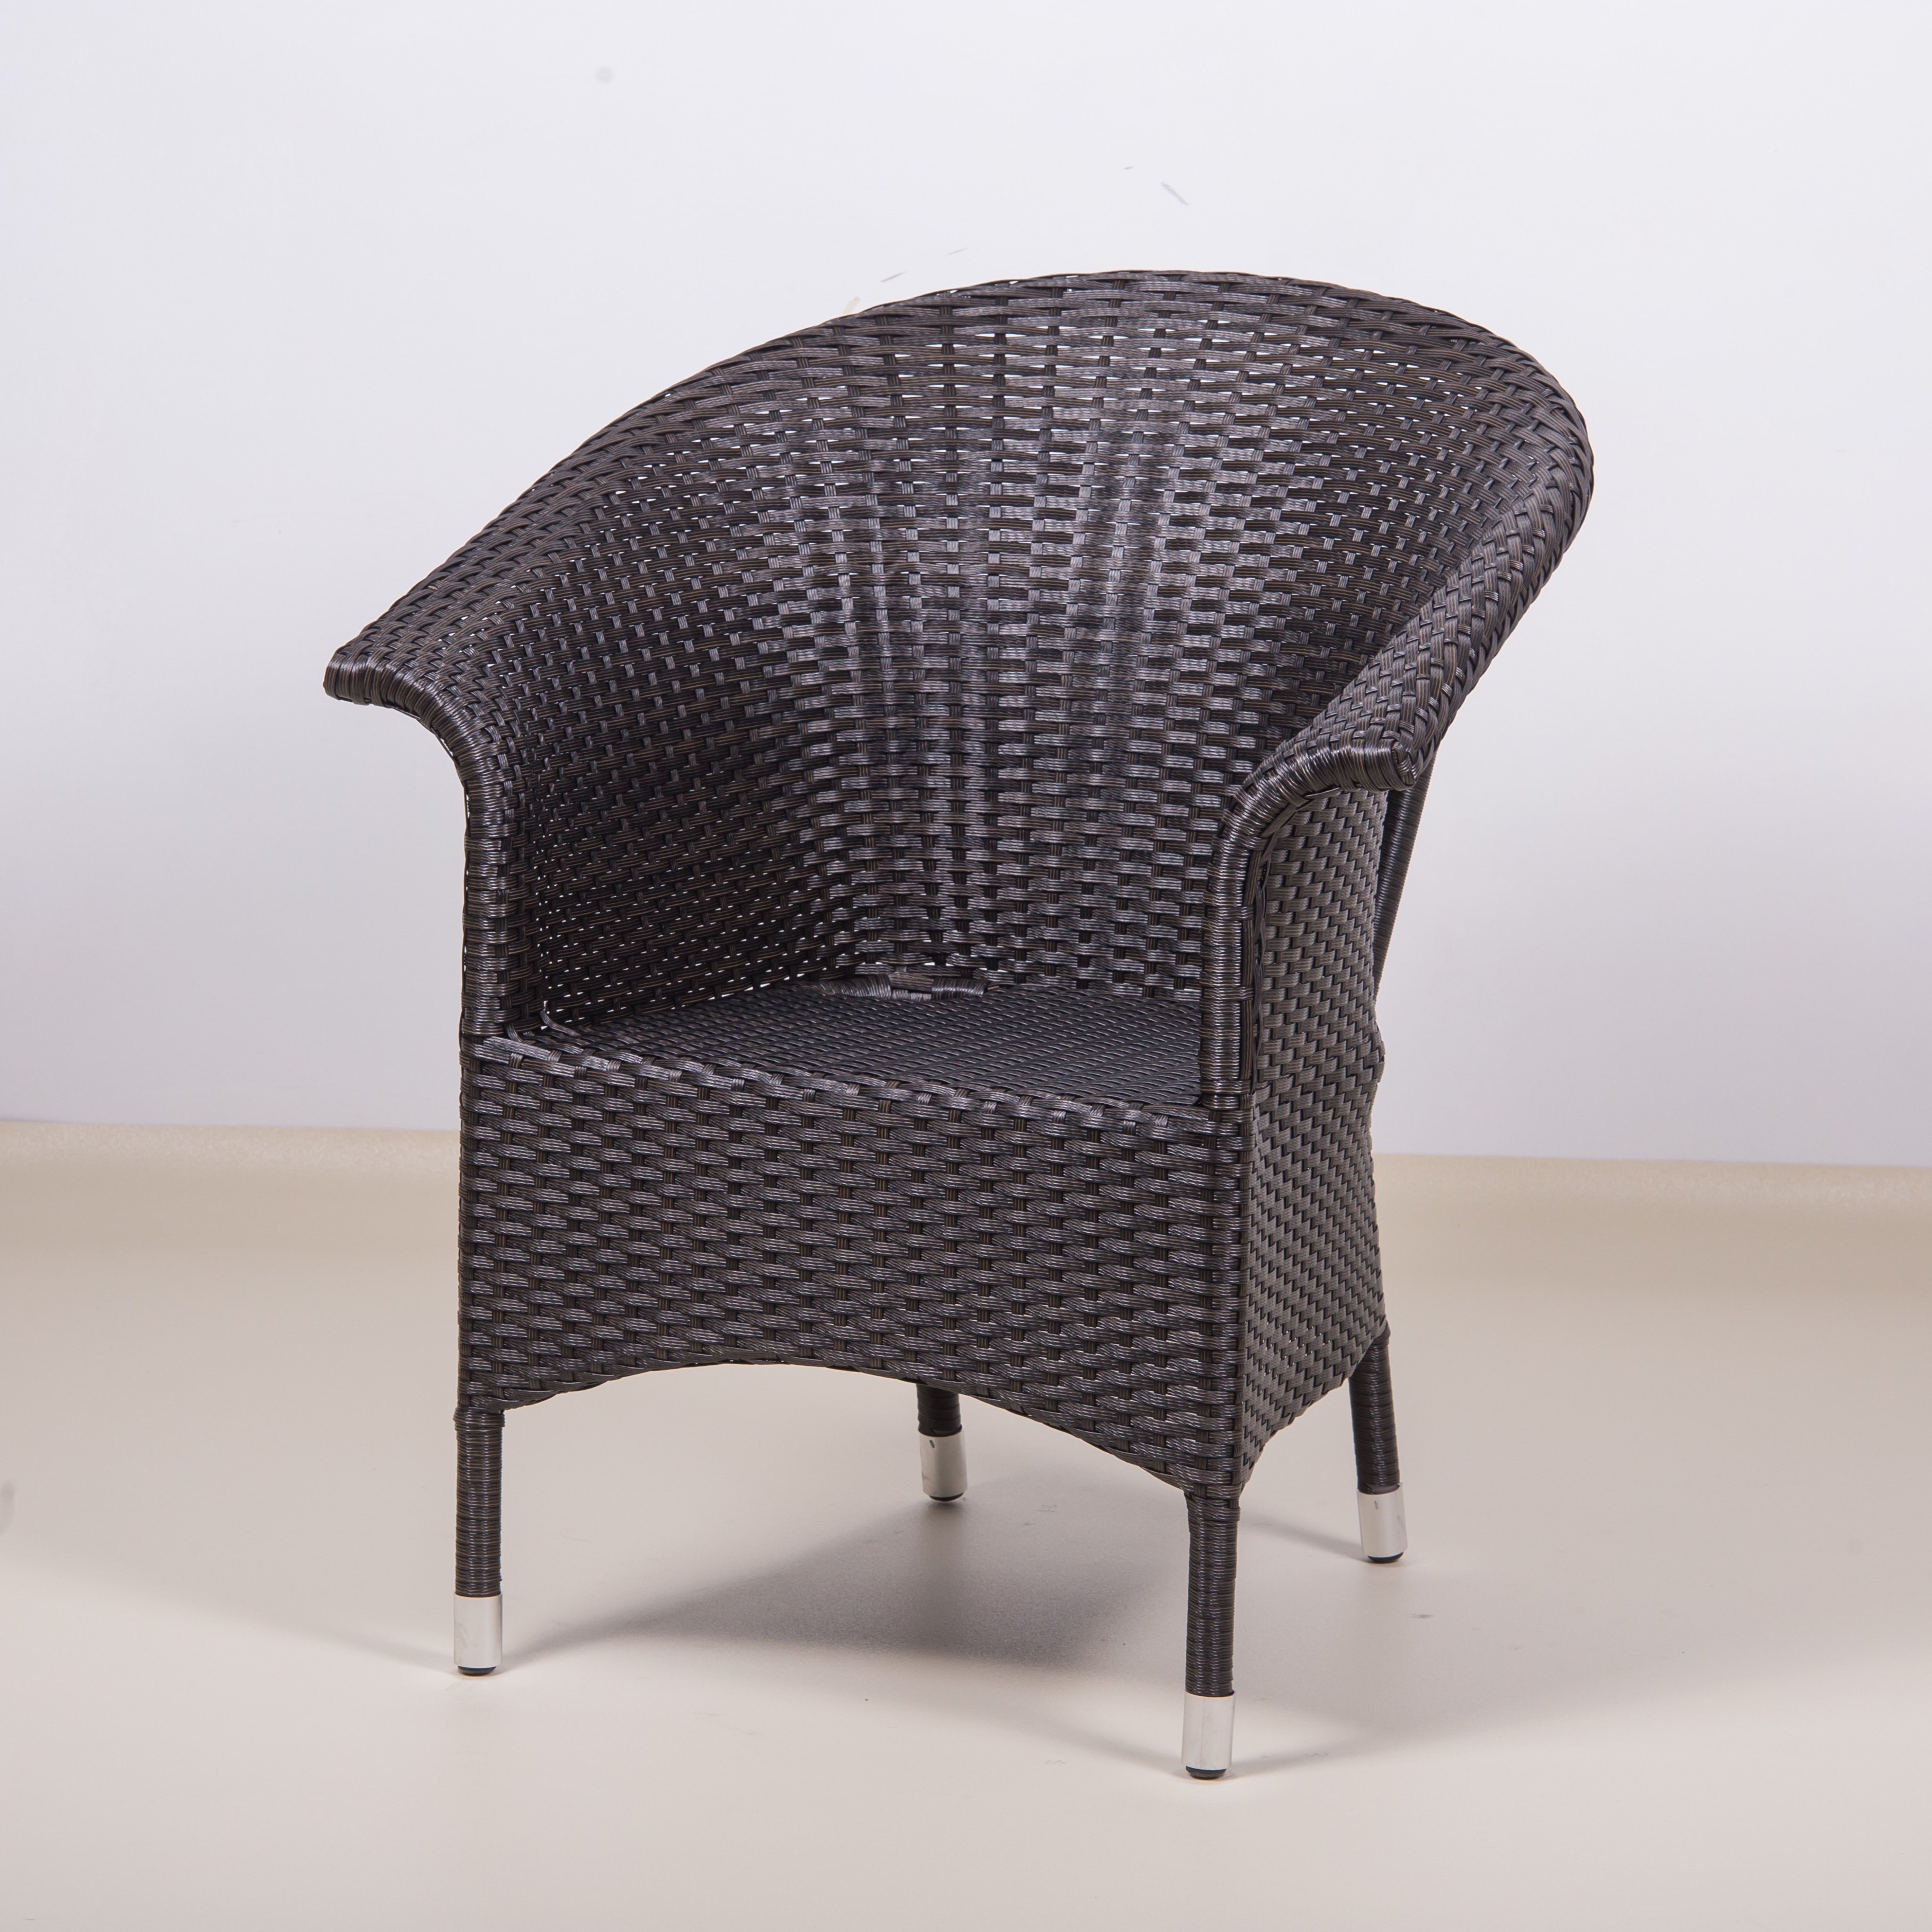 Плетеное кресло Ravenna y490 Beige